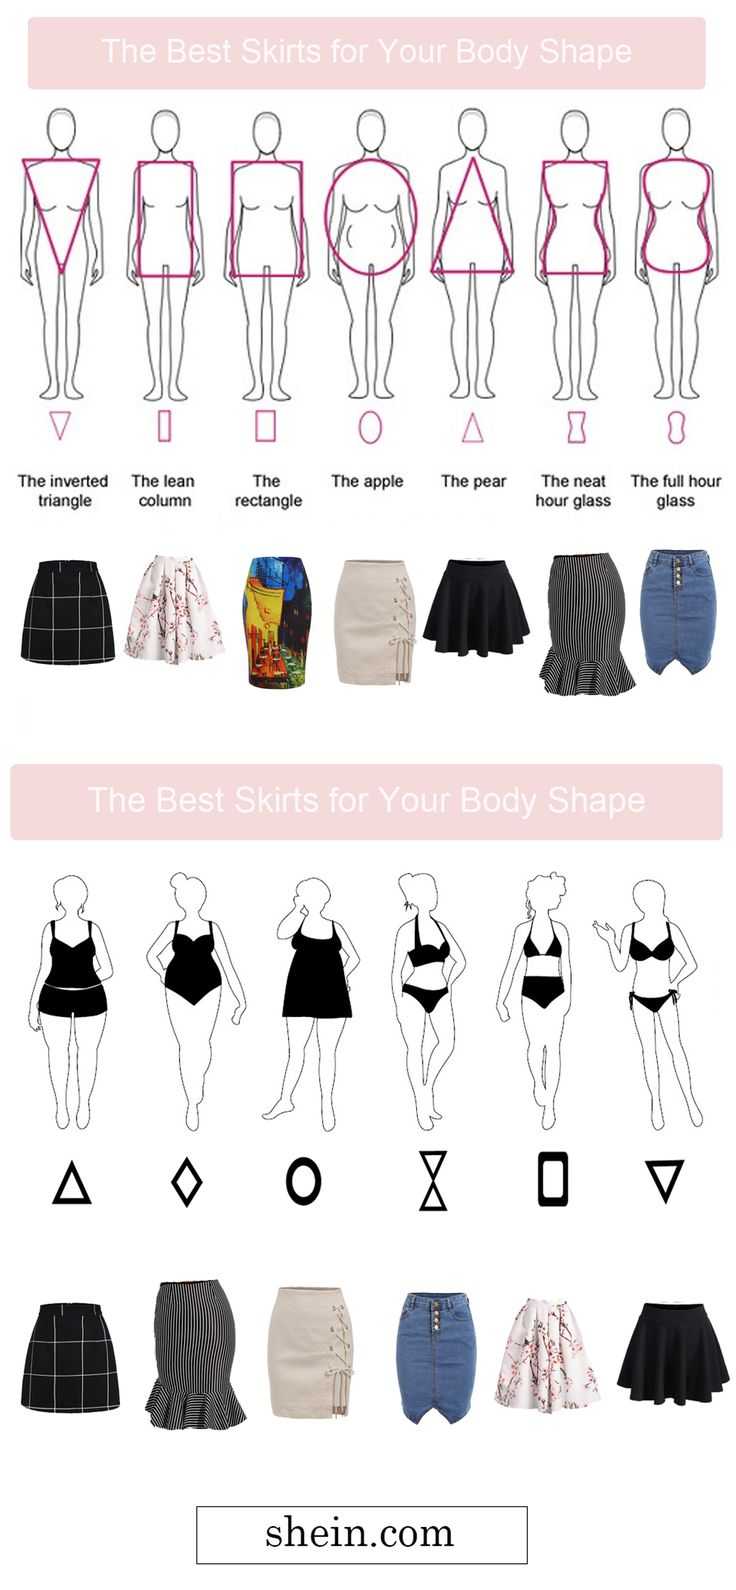 Как выбрать юбку по типу фигуры? « itissite.com